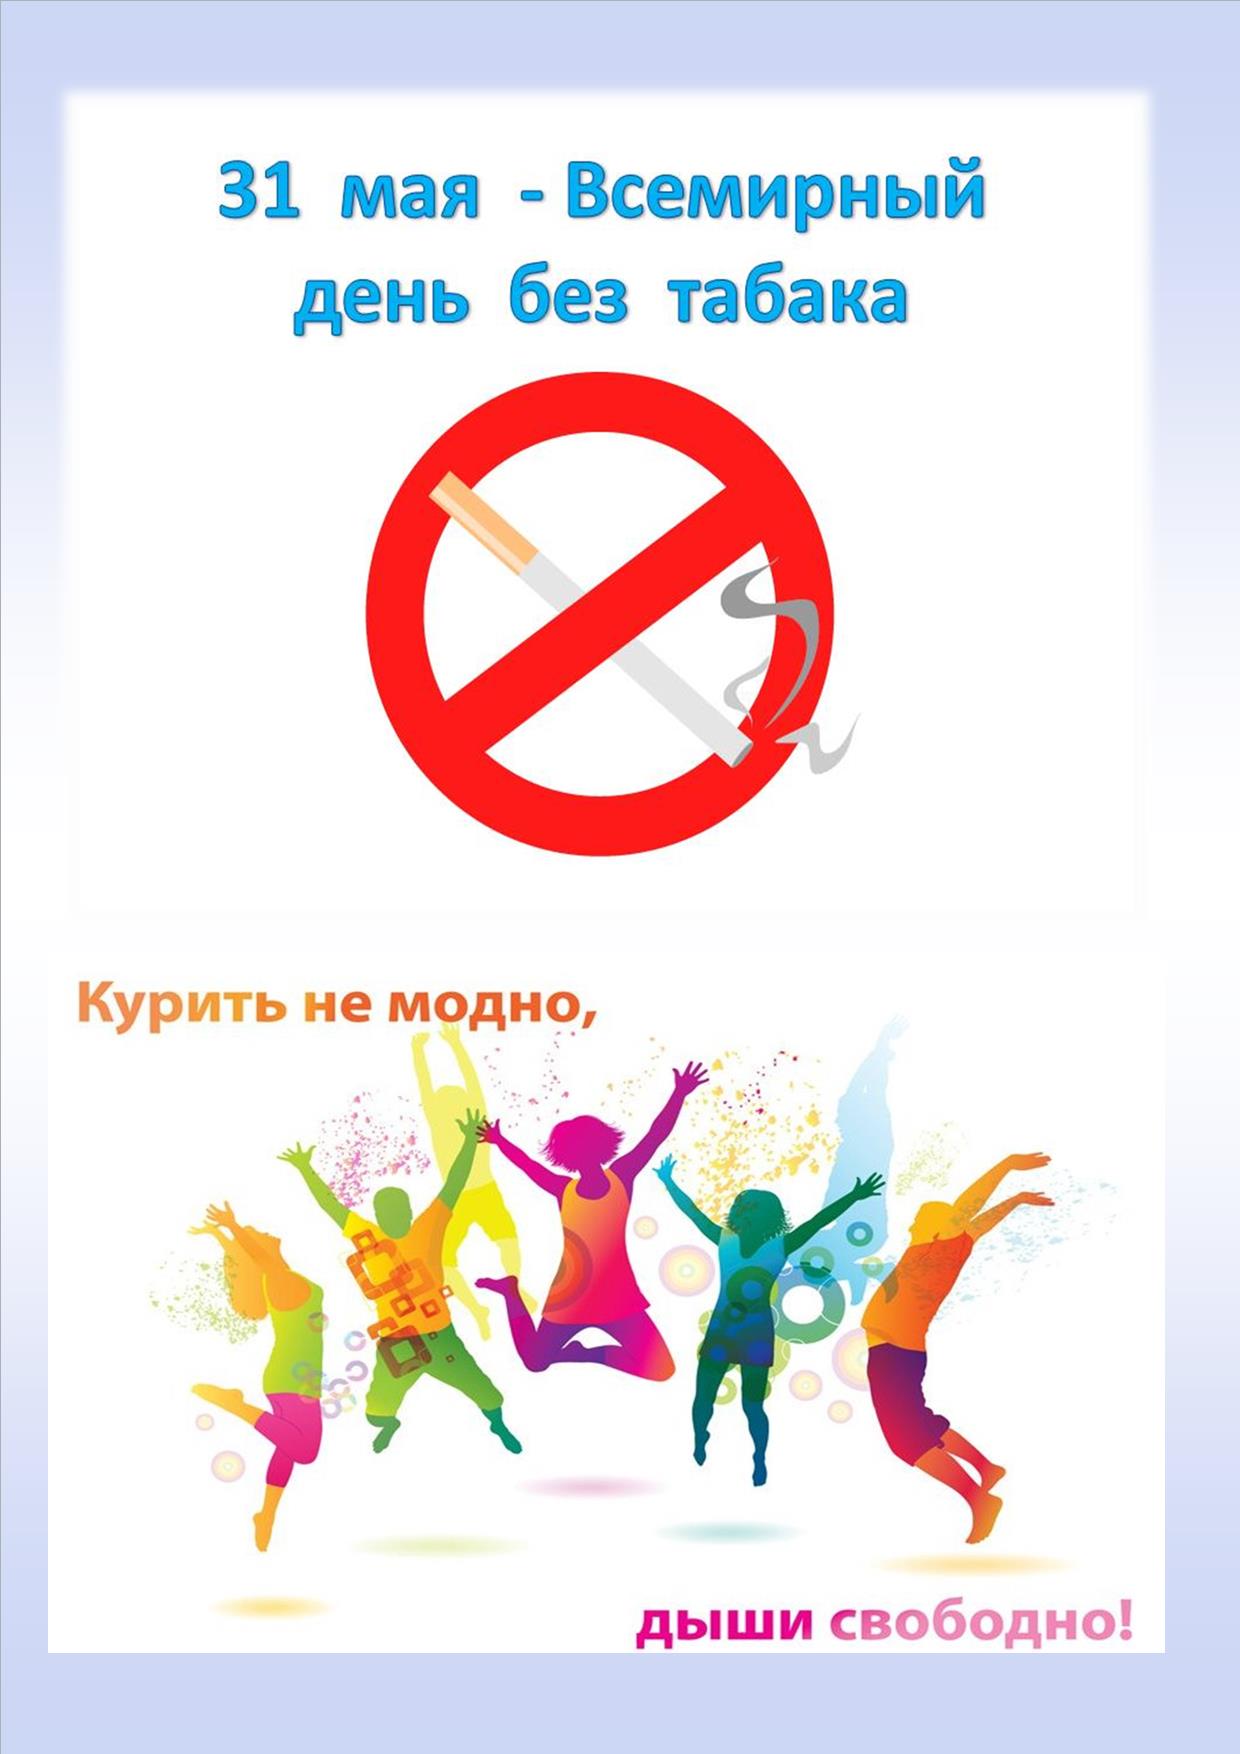 Акция, посвященная Всемирному дню отказа от табакокурения